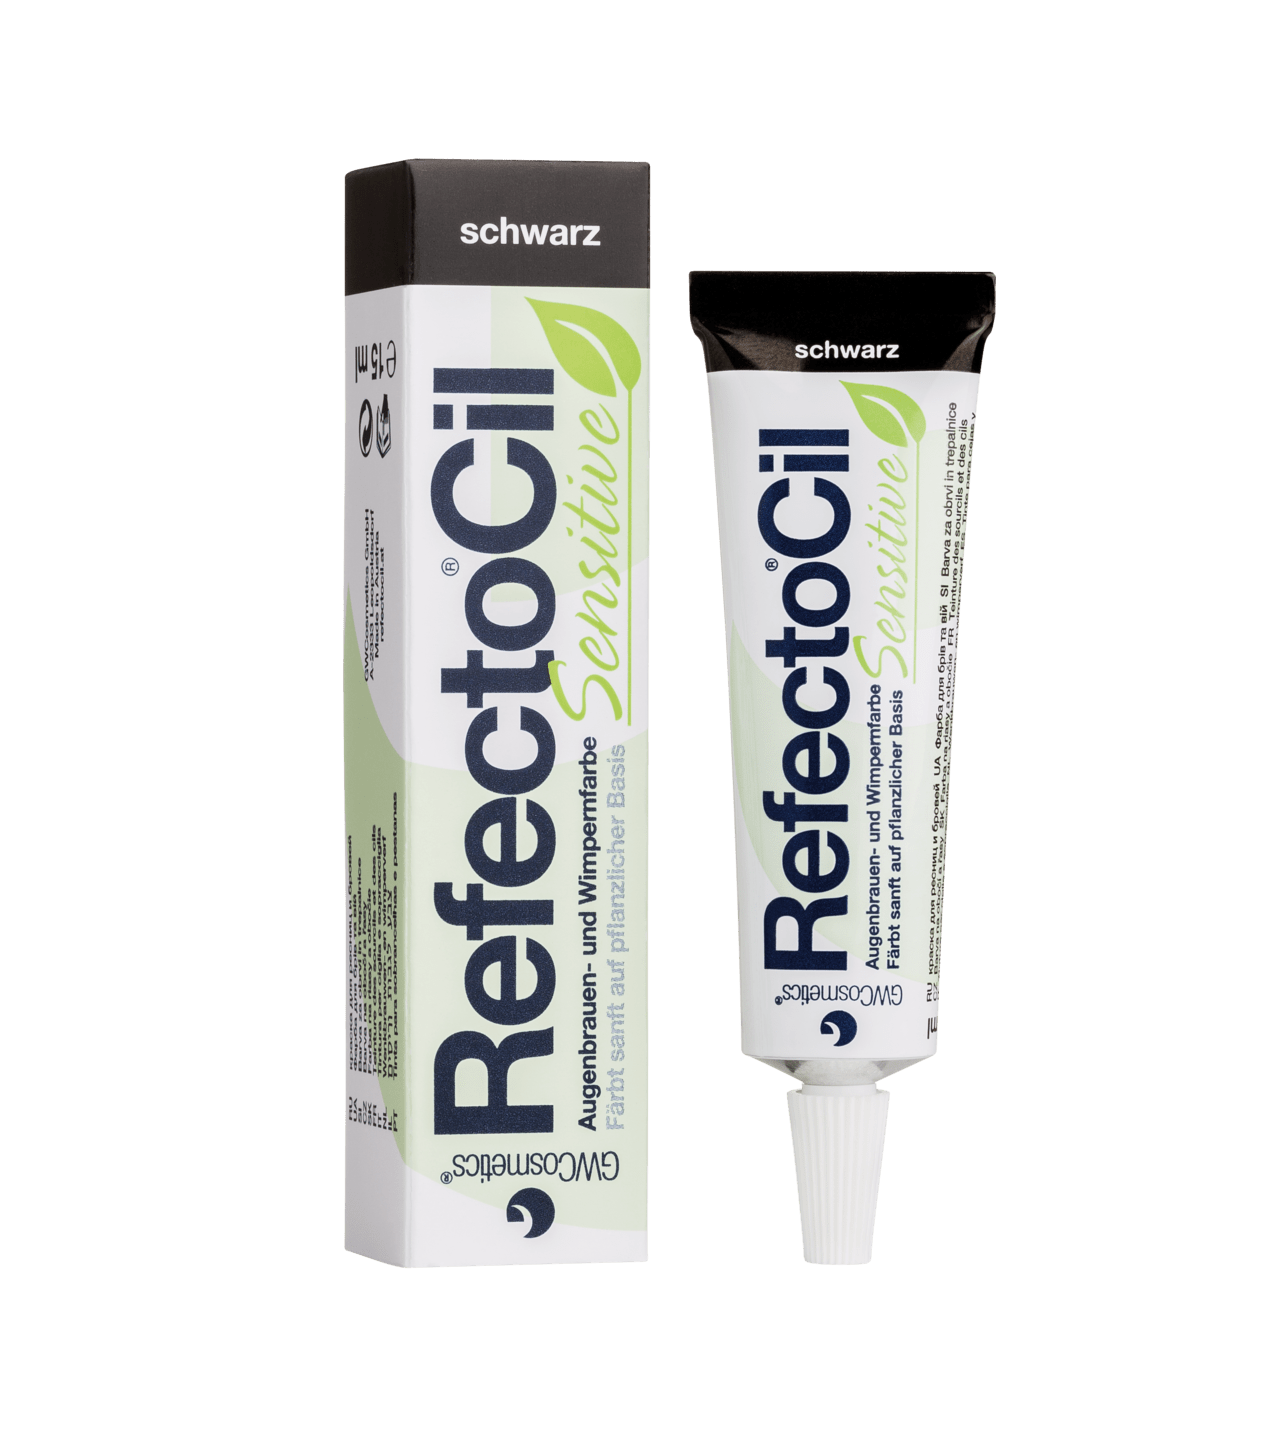 RefectoCil - Sensitive Augenbrauen- und Wimpernfarbe, 15 ml in schwarz